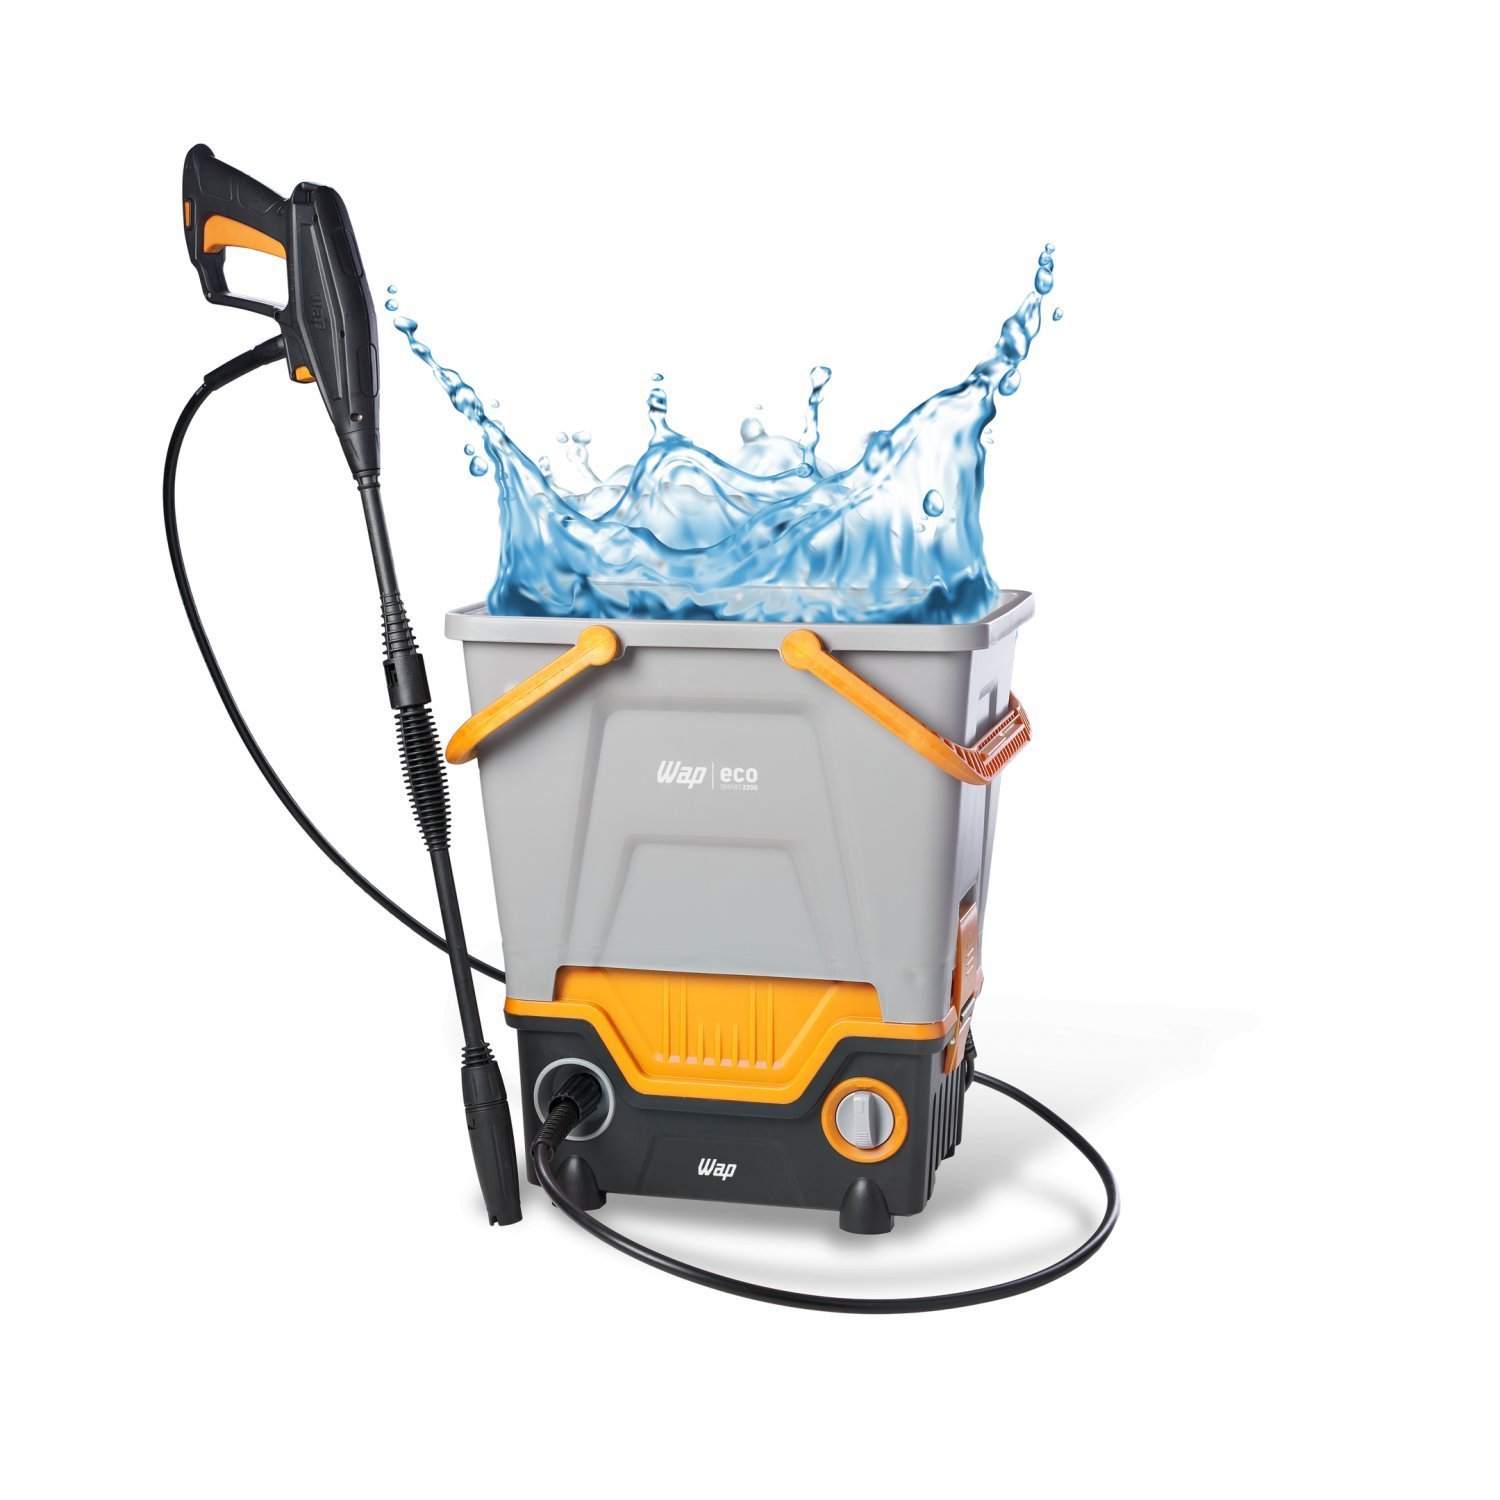 Lavadora de Alta Pressão WAP Eco Smart 2200 Reutiliza Água 1750W 1700PSI 127V - 8